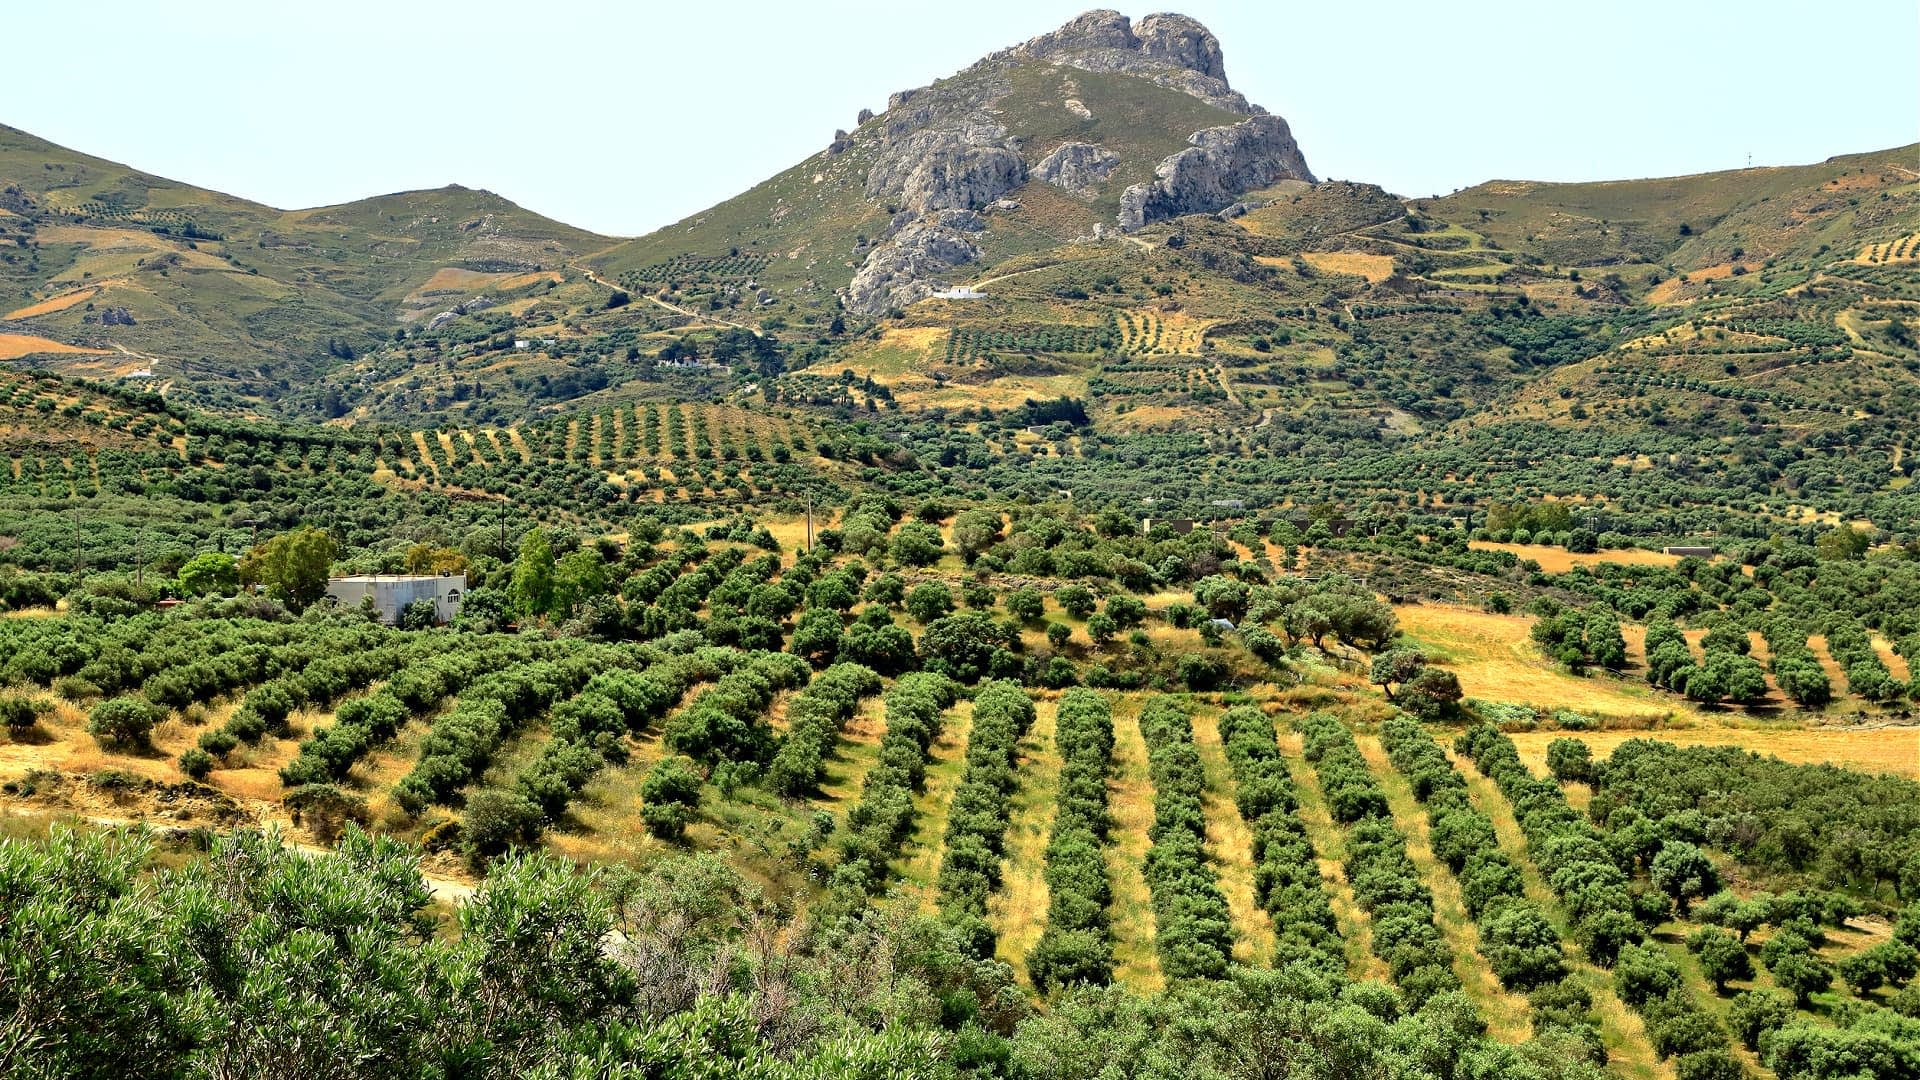 Produktion-Business-Europa-Produzenten-auf-Kreta-Look-to-DNA-Analyse-zur-Mehrwertschöpfung-Olivenöl-Zeiten